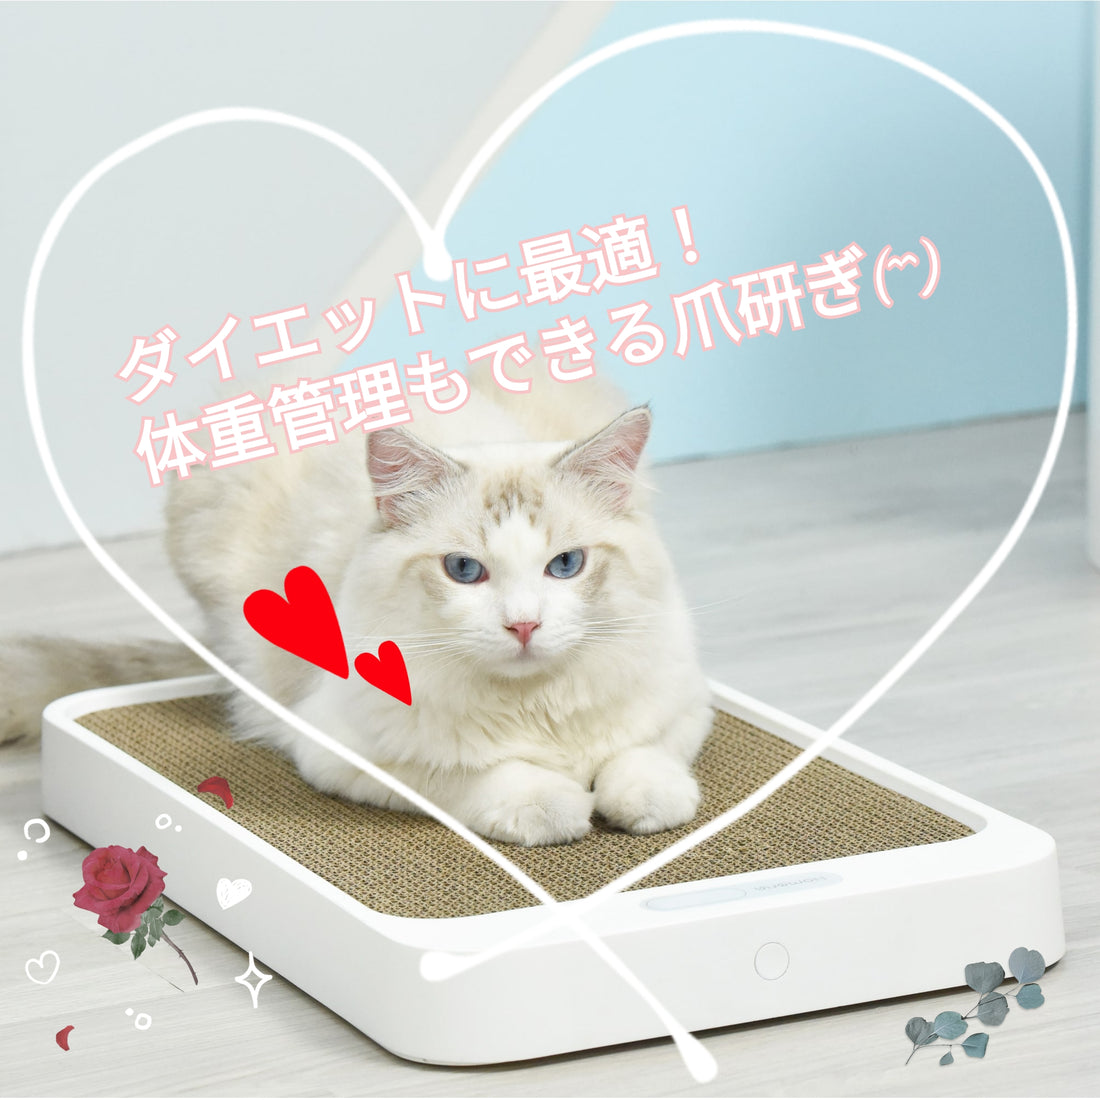 【新商品】愛猫の運動と体重管理に最適なアイテムが登場！